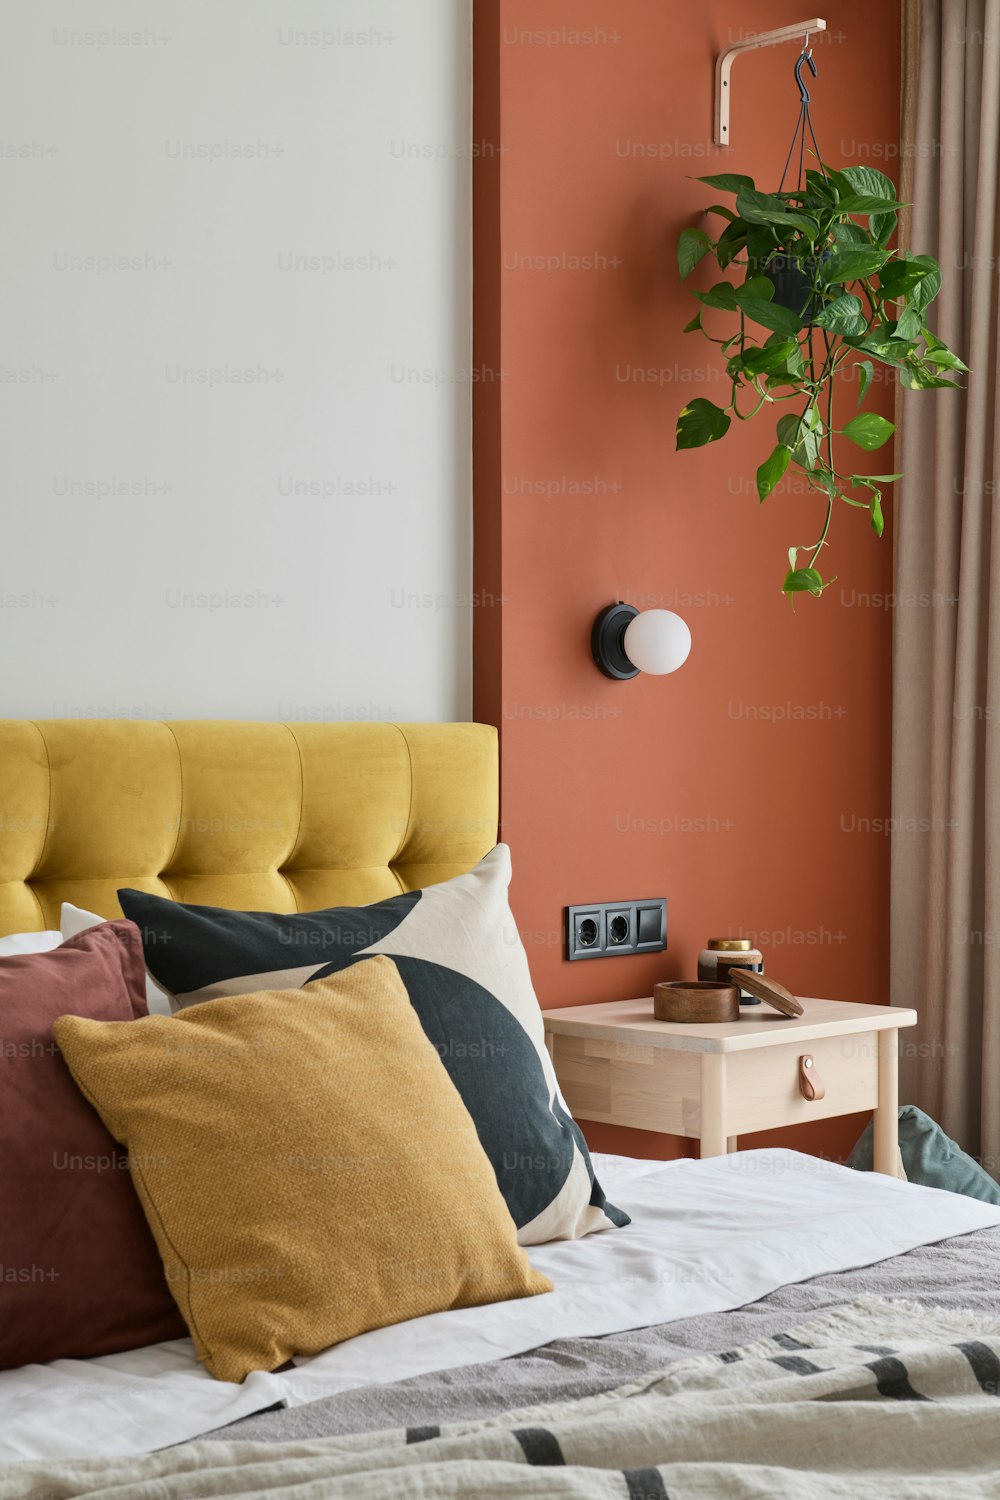 노란색과 주황색 베개가 있는 침대와 벽에 식물이 있는 침대